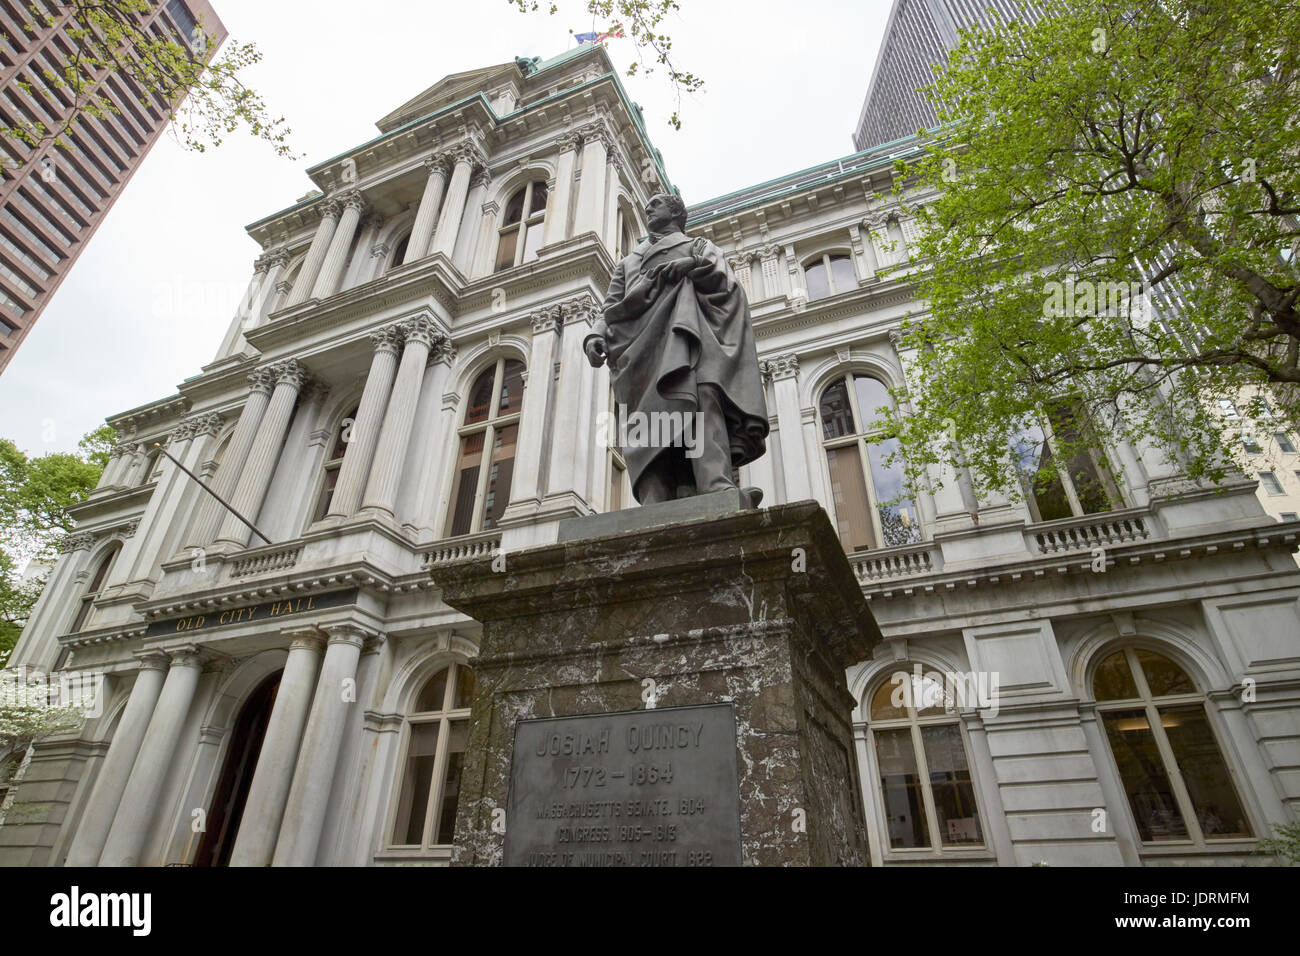 Statua di josiah quincy iii nella motivazione del vecchio municipio edificio Boston STATI UNITI D'AMERICA Foto Stock